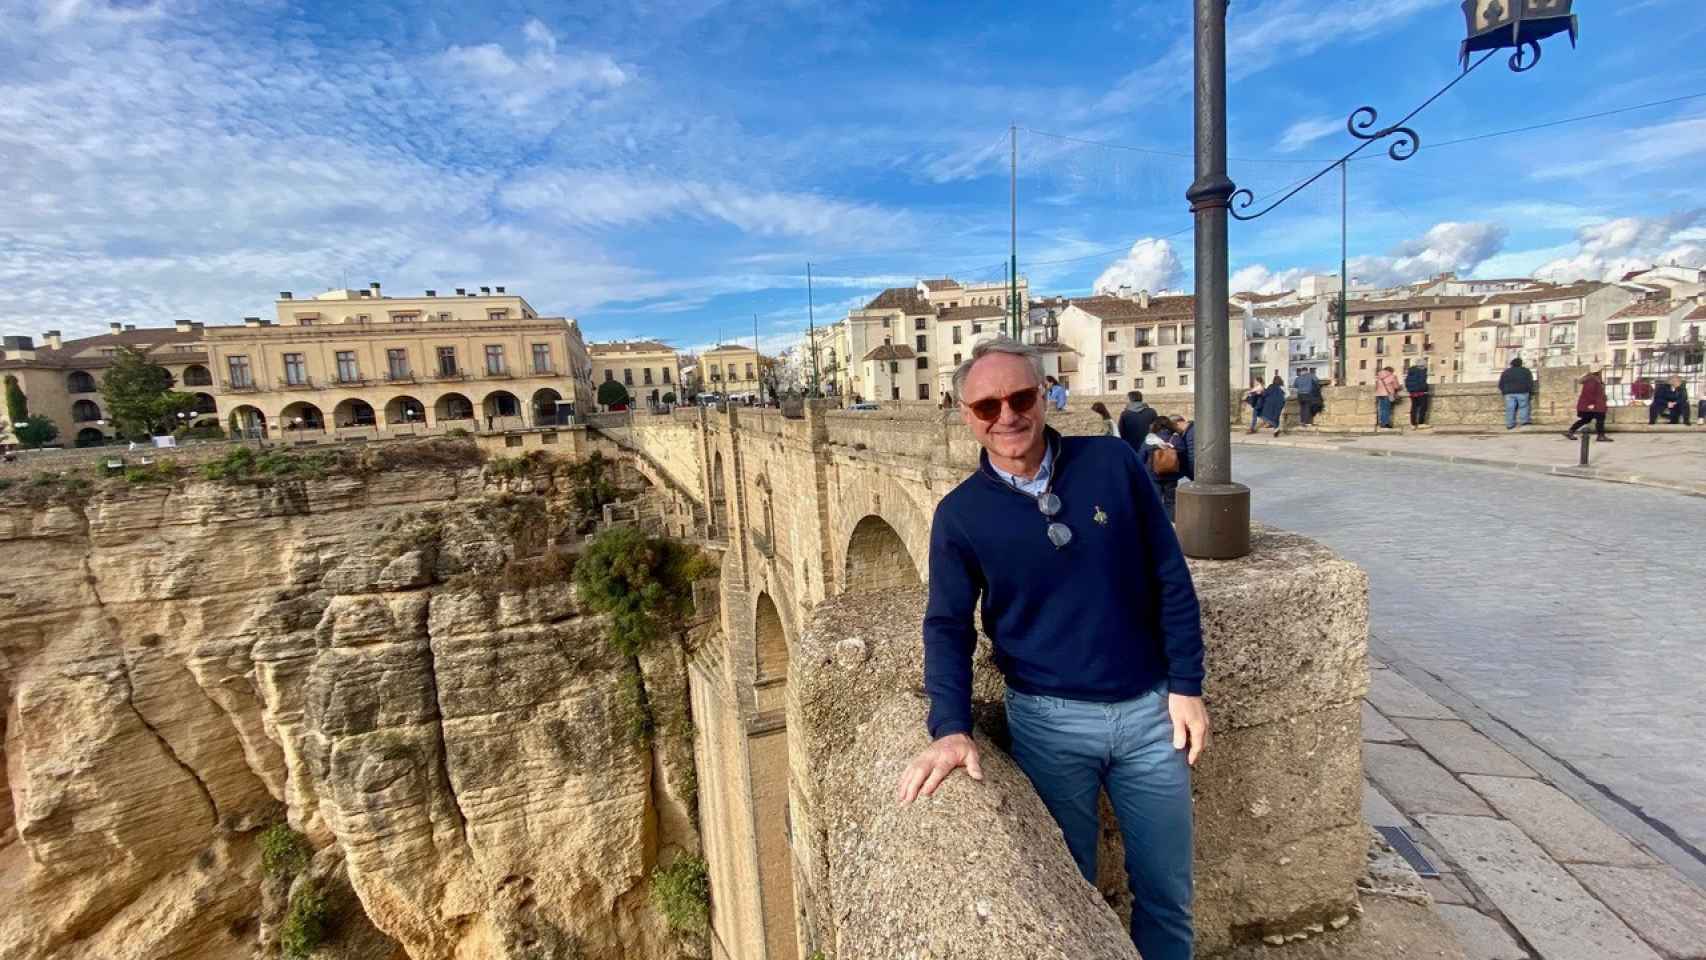 Dan Brown visita Ronda (Málaga) y plantea un acertijo a sus seguidores:  "Where in the world?"